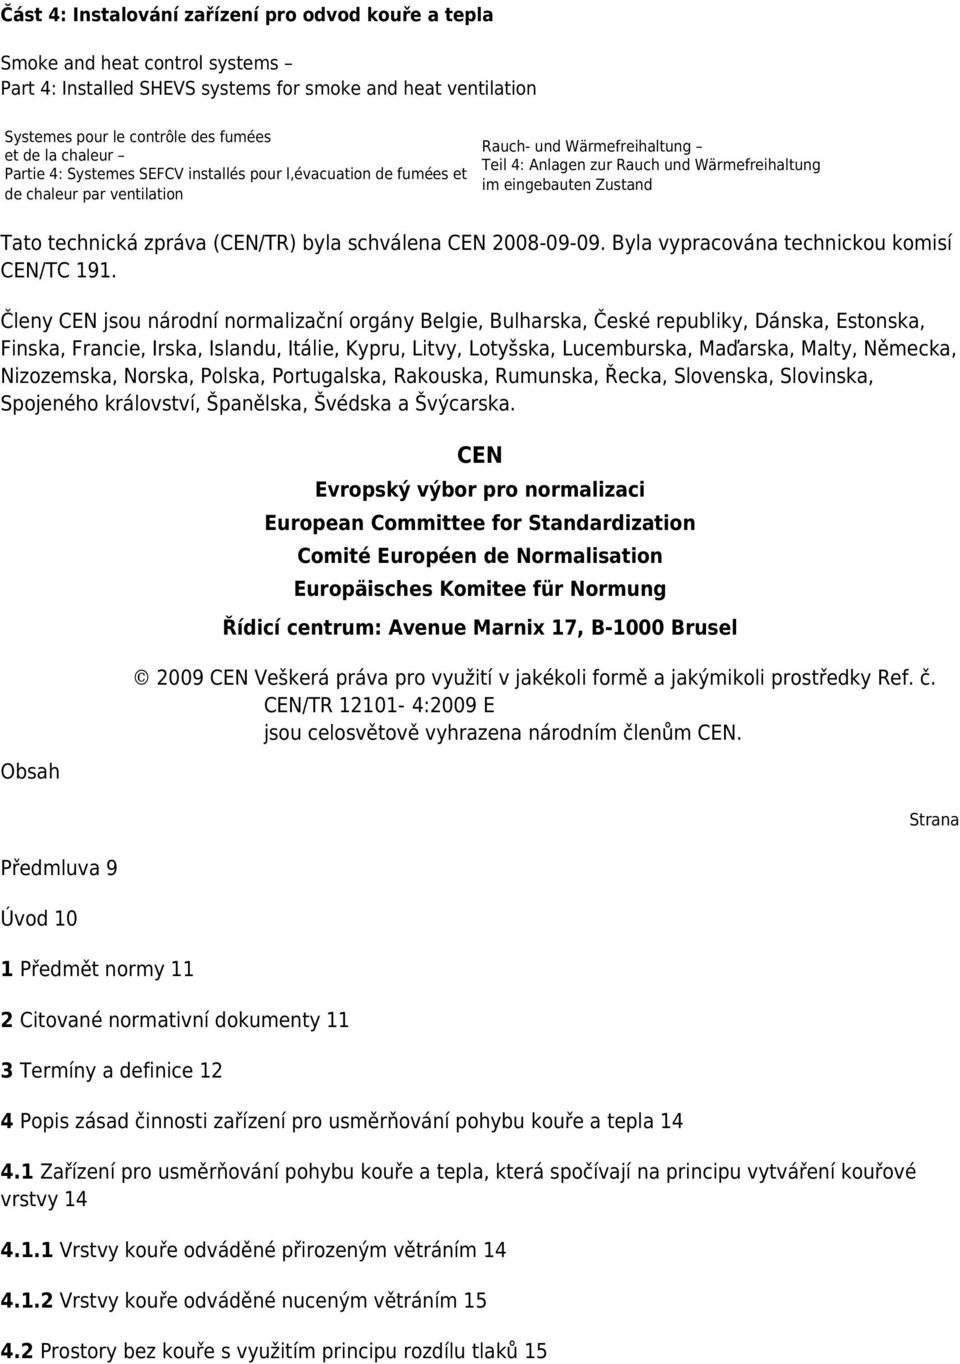 Tato technická zpráva (CEN/TR) byla schválena CEN 2008-09-09. Byla vypracována technickou komisí CEN/TC 191.